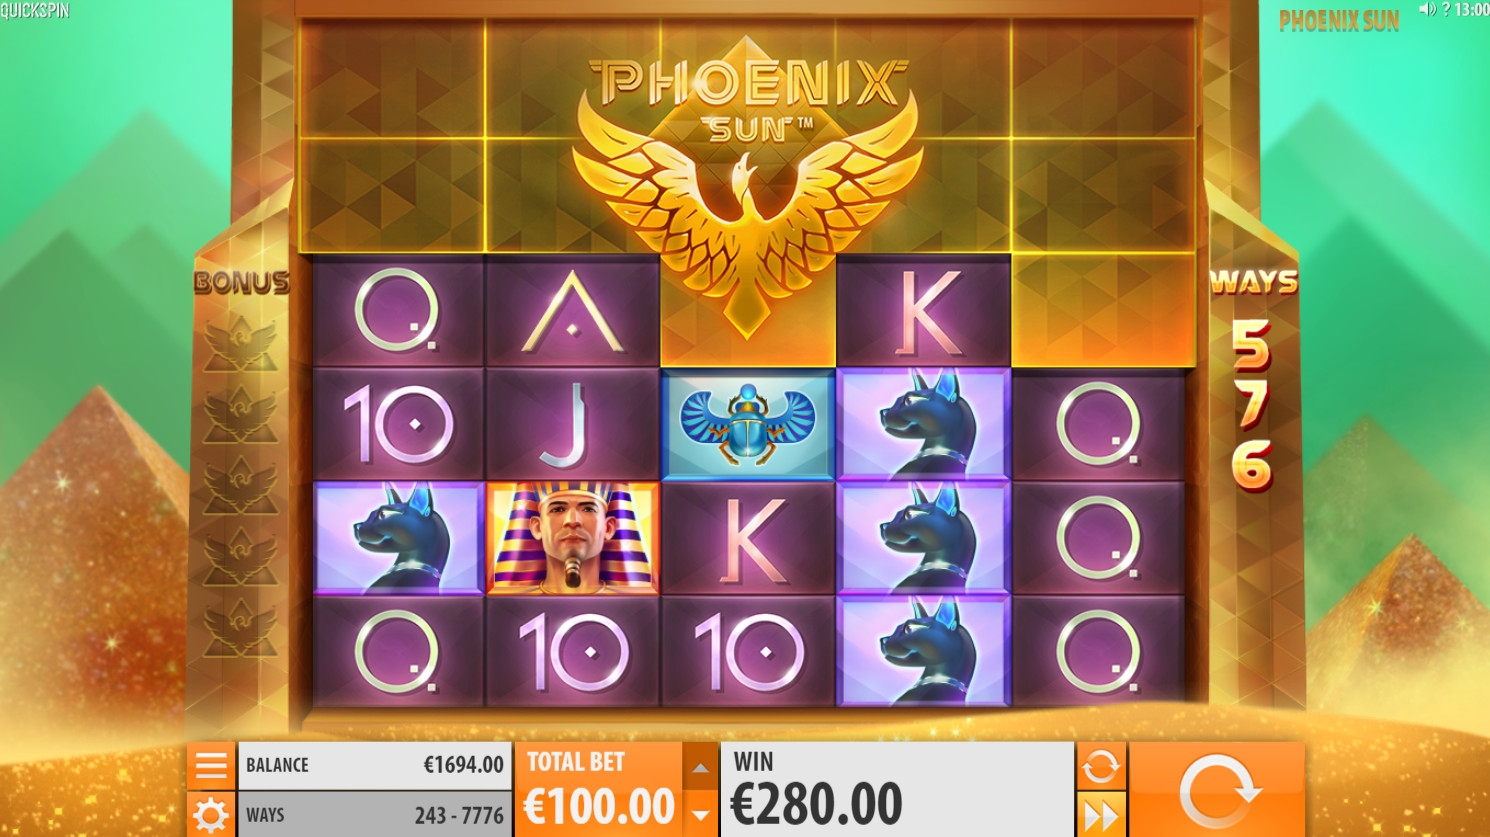 Phoenix Sun (Phoenix Sun) from category Slots